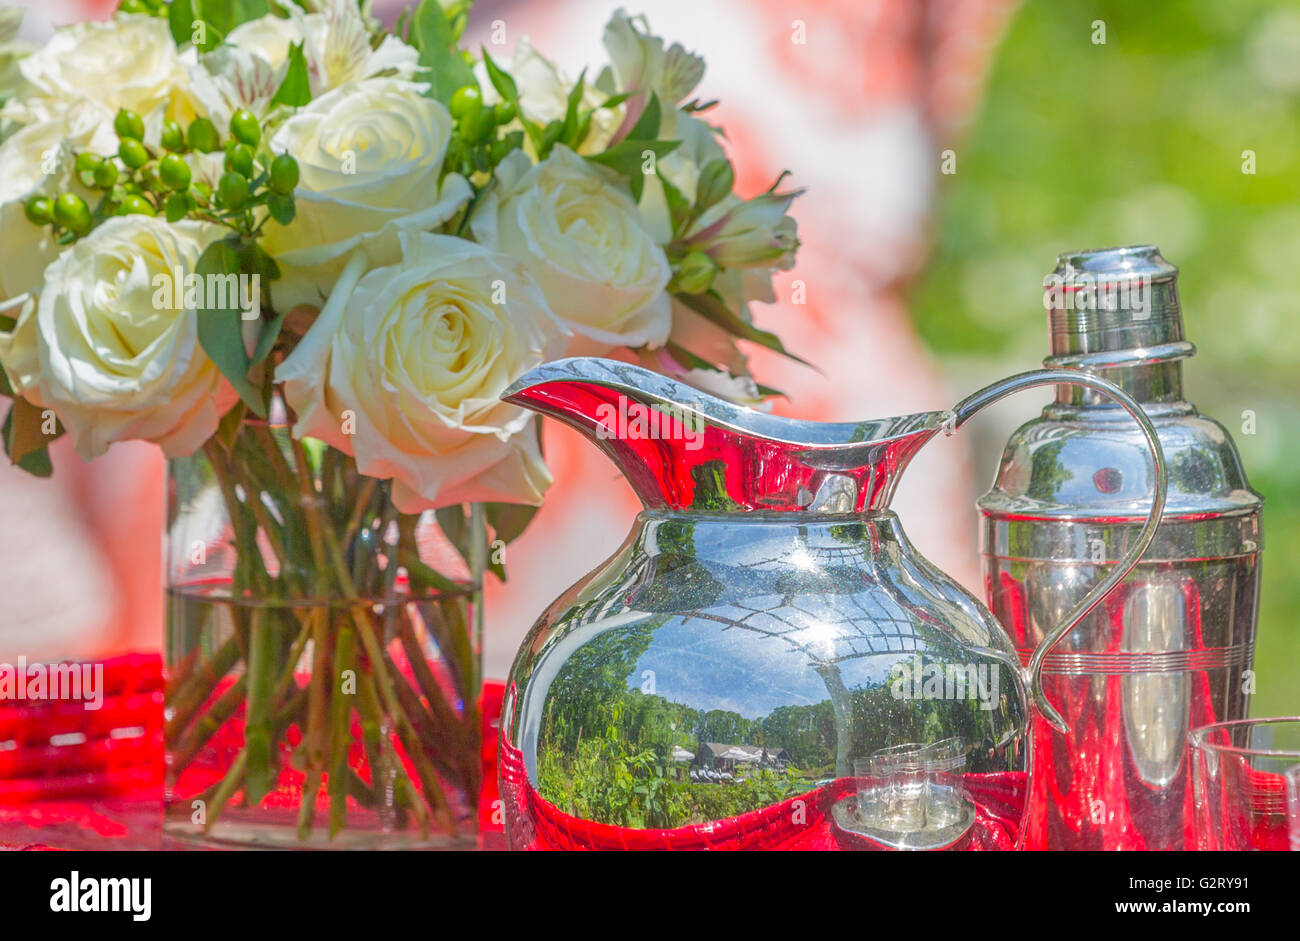 Natura morta con brocca d'argento e argento shaker, fresche rose recise in vaso di vetro con acqua sulla tabella rossa Foto Stock